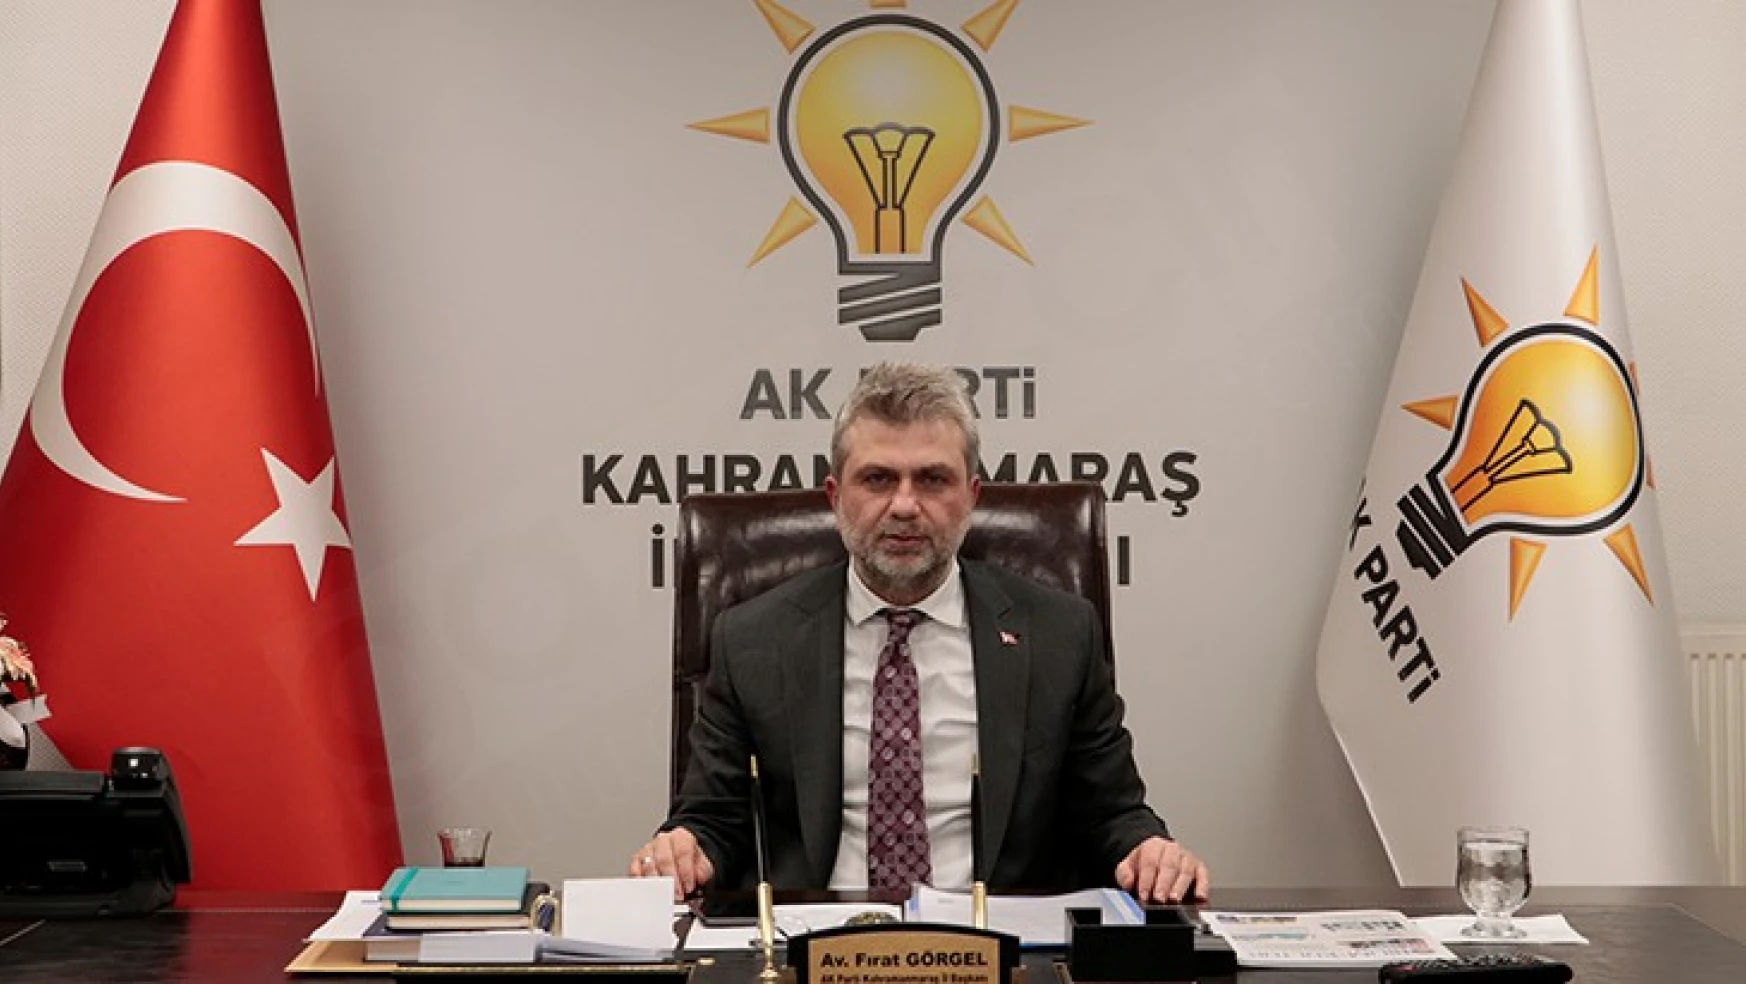 AK Parti İl Başkanı Av. Fırat Görgel, Cumhurbaşkanının Kahramanmaraş ziyareti ile ilgili detayları paylaştı